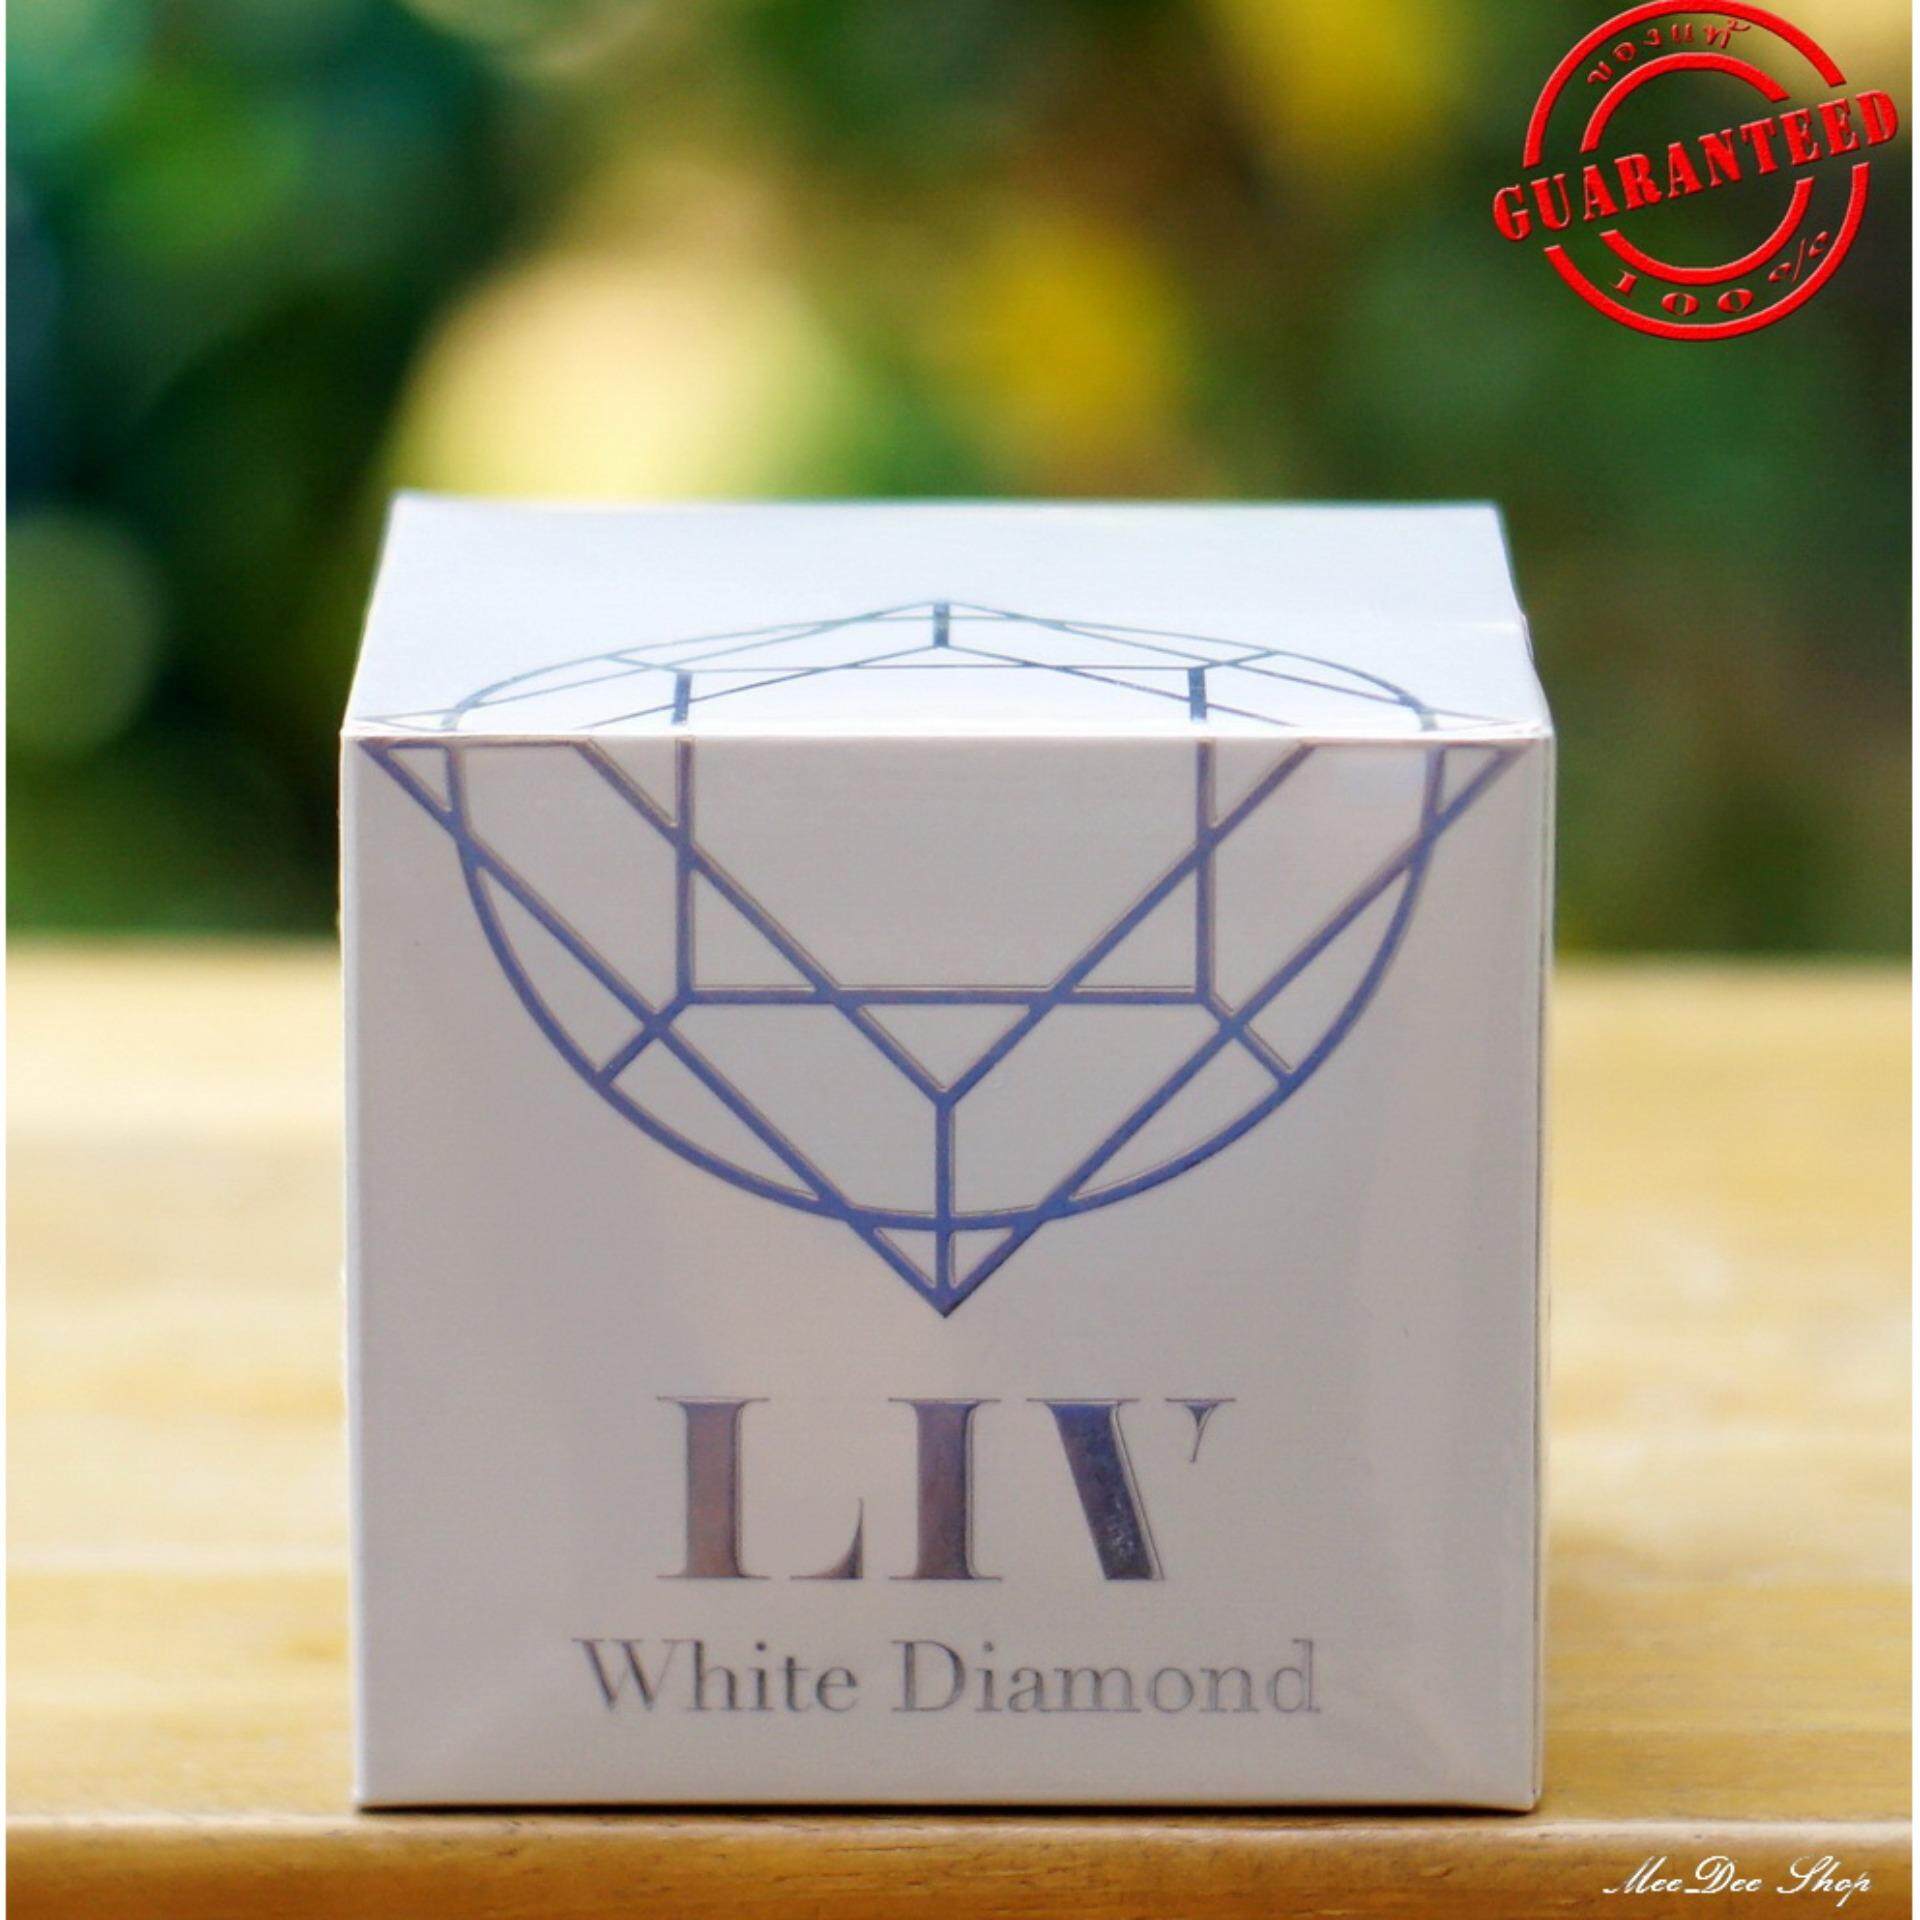 (ส่งฟรี)ของแท้ 100%LIV White Diamond Cream ลิฟ ไวท์ ไดมอนด์ ครีม ครีมดีที่วิกกี้ สุนิสา แนะนำ บำรุงผิวหน้าเนื้อครีมเข้มข้น 30 ml. (1 กล่อง)